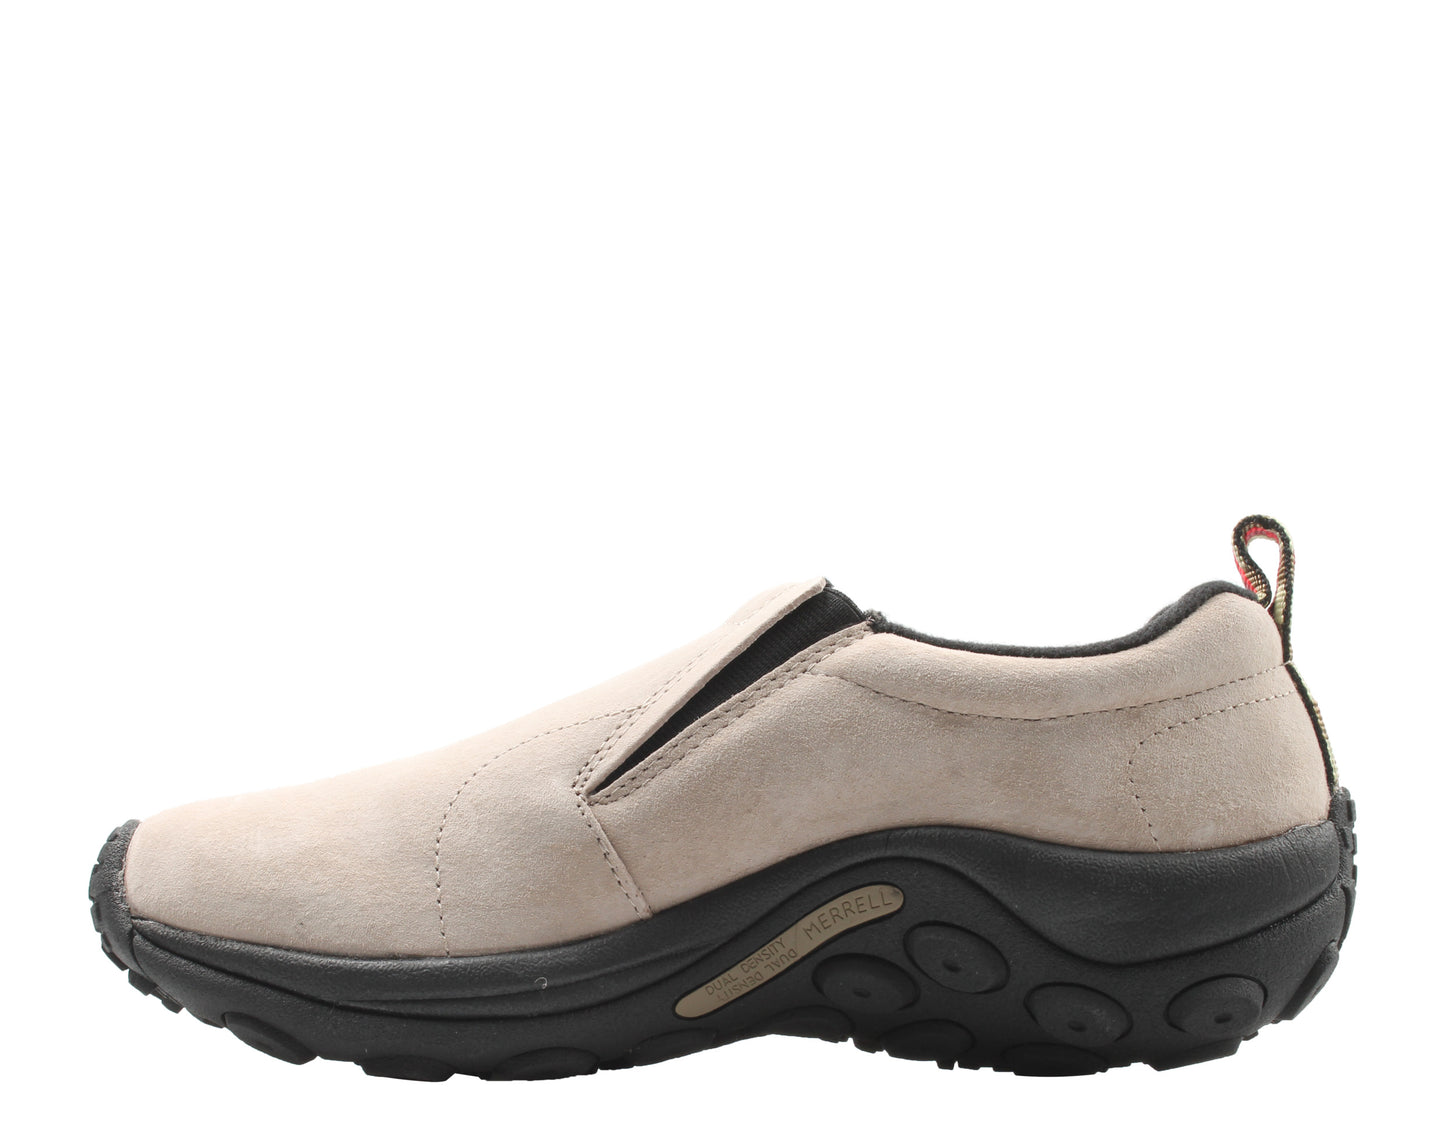 Merrell Jungle Moc Classic Taupe Men's Slip-On Shoes J60801